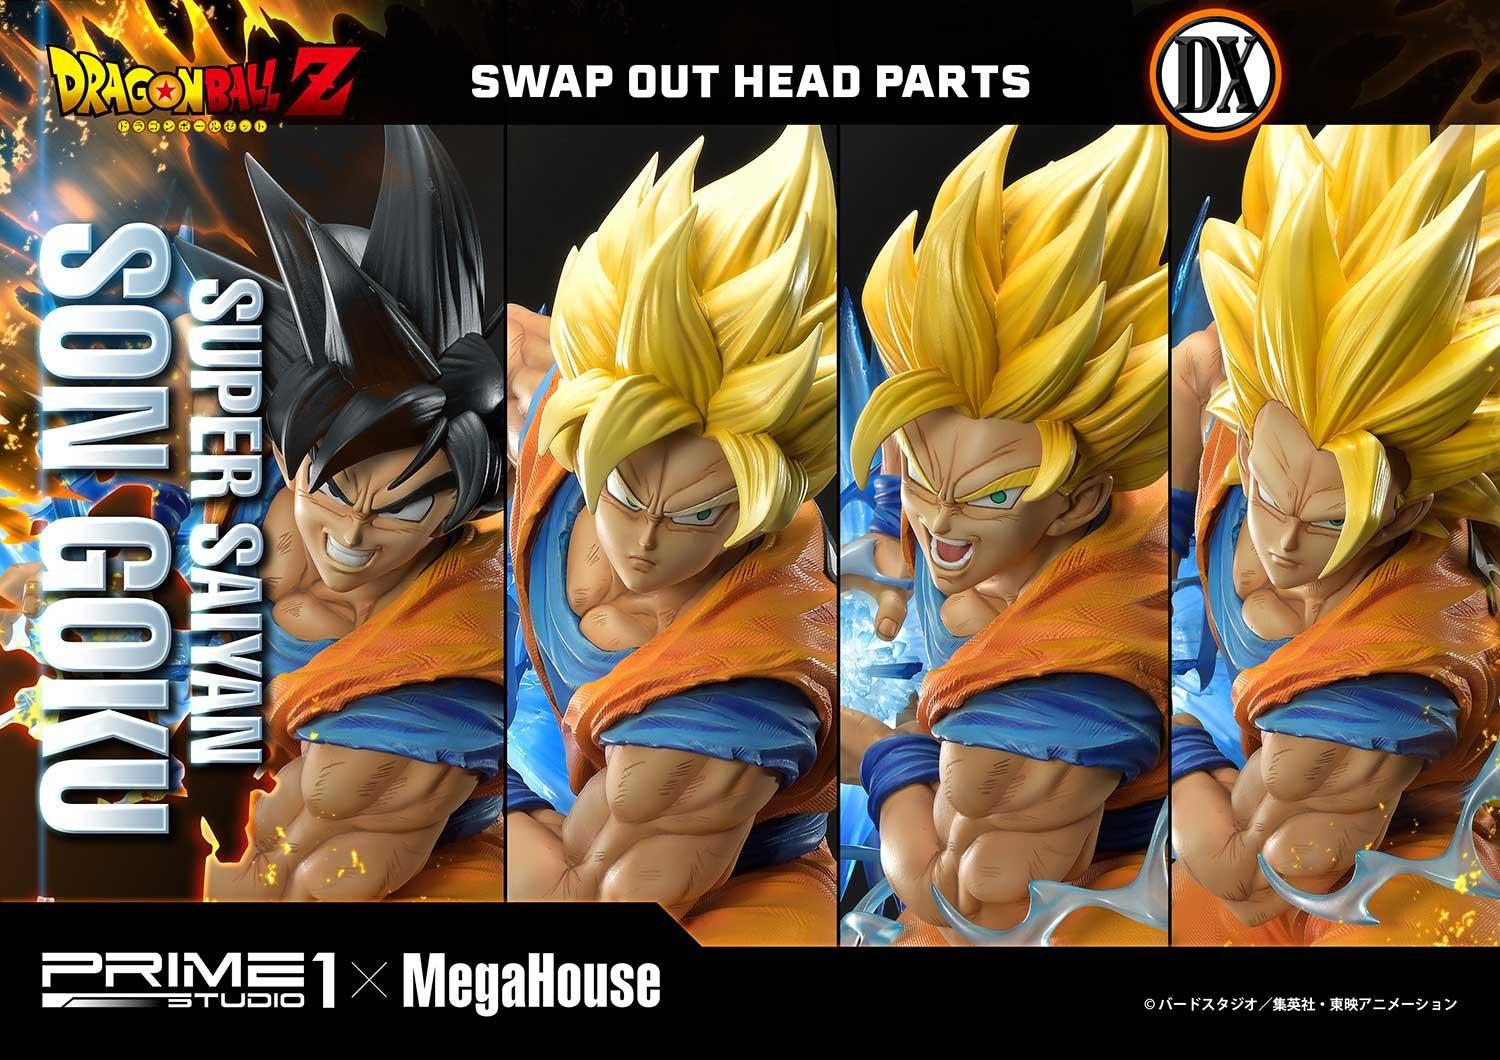 Super Saiyan Son Goku - Dragon Ball Anime | Poster